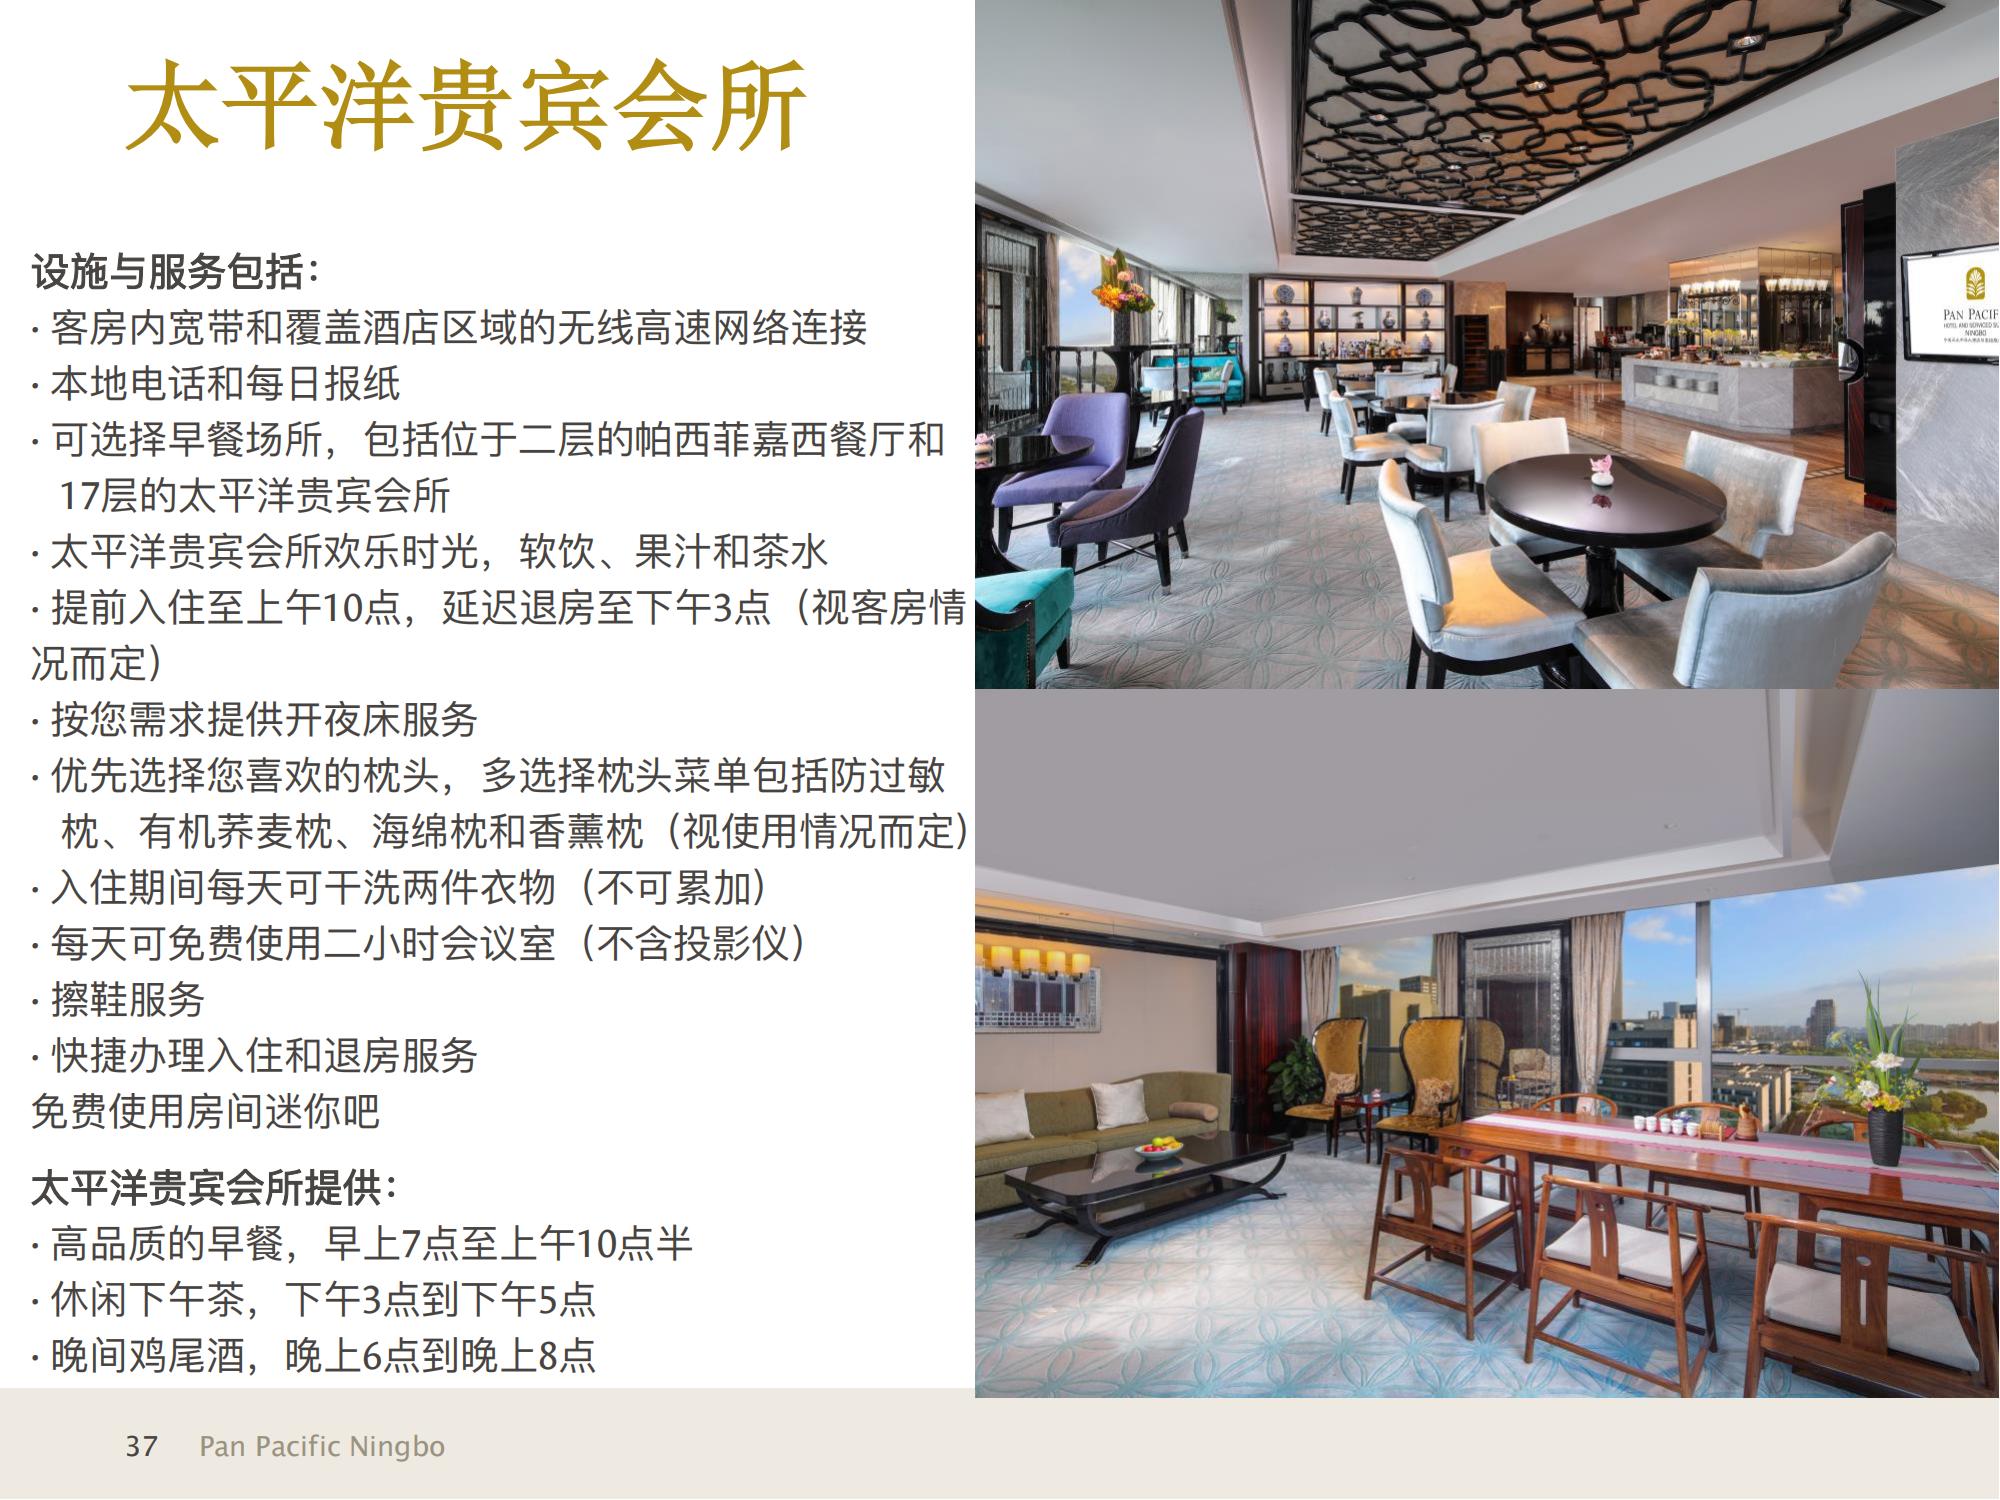 1_宁波泛太平洋大酒店与高级服务公寓信息展示+宁波热门景点20211223_06.jpg